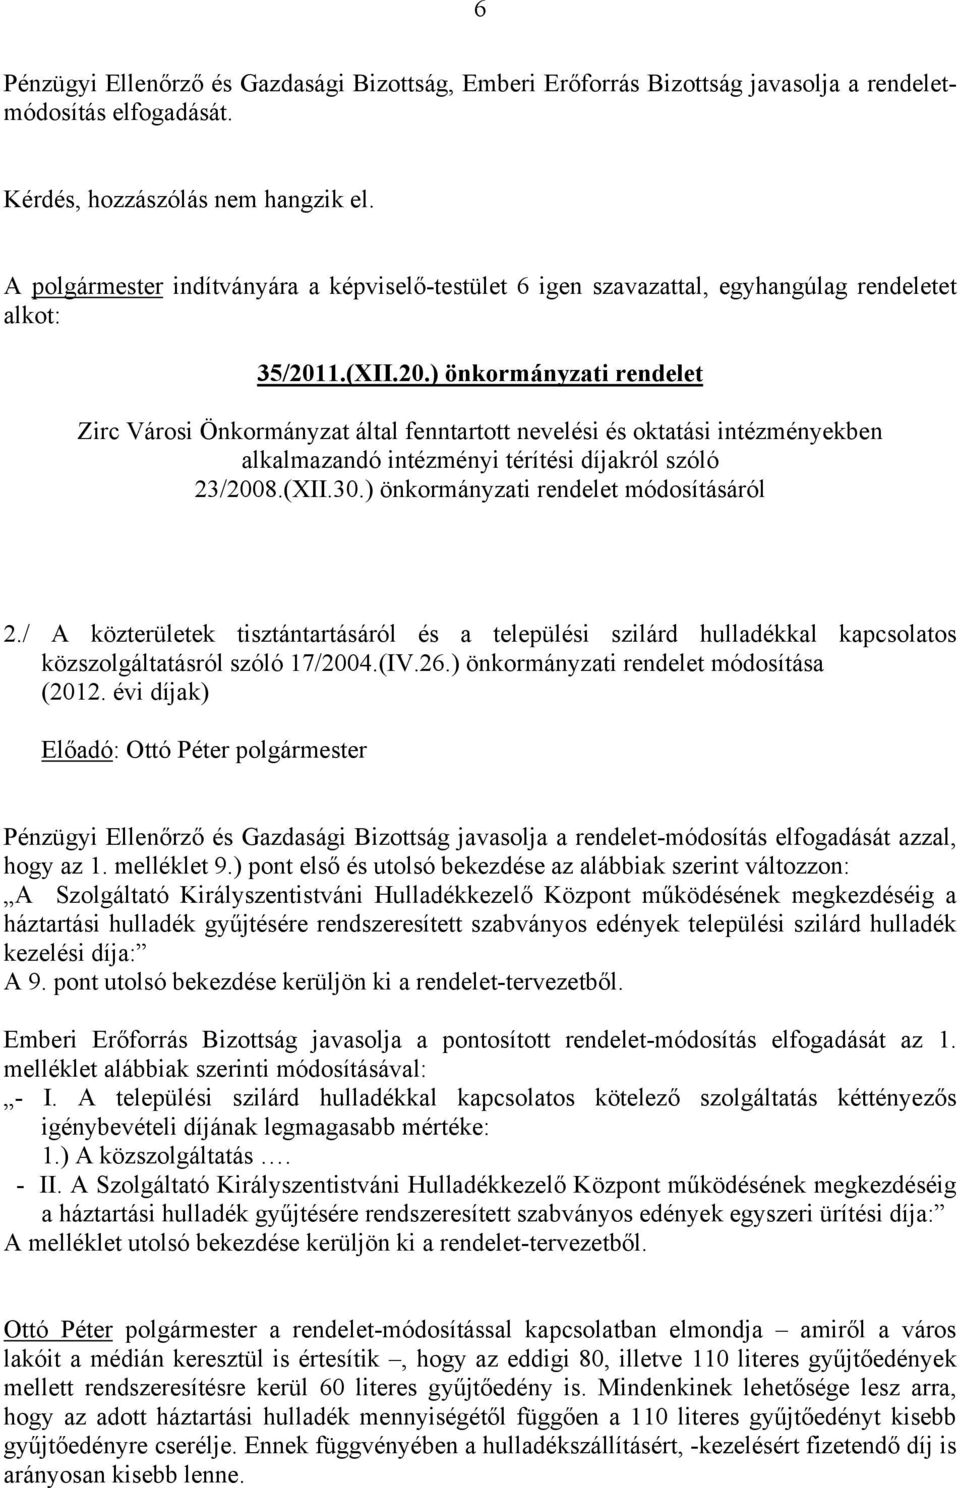 1.(XII.20.) önkormányzati rendelet Zirc Városi Önkormányzat által fenntartott nevelési és oktatási intézményekben alkalmazandó intézményi térítési díjakról szóló 23/2008.(XII.30.